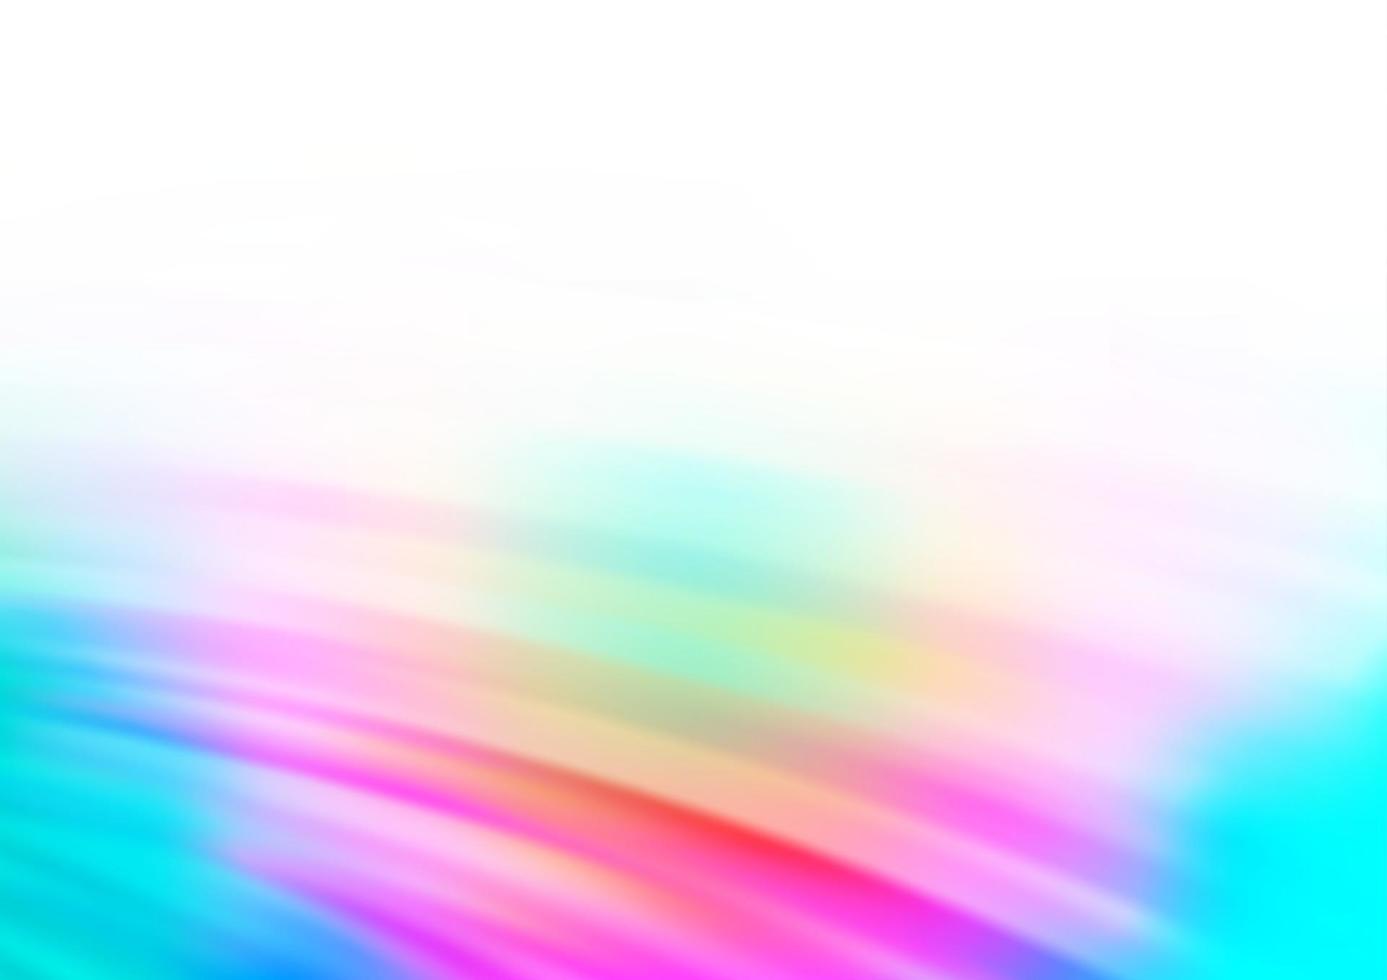 luz multicolor, padrão de vetor de arco-íris com fitas dobradas.